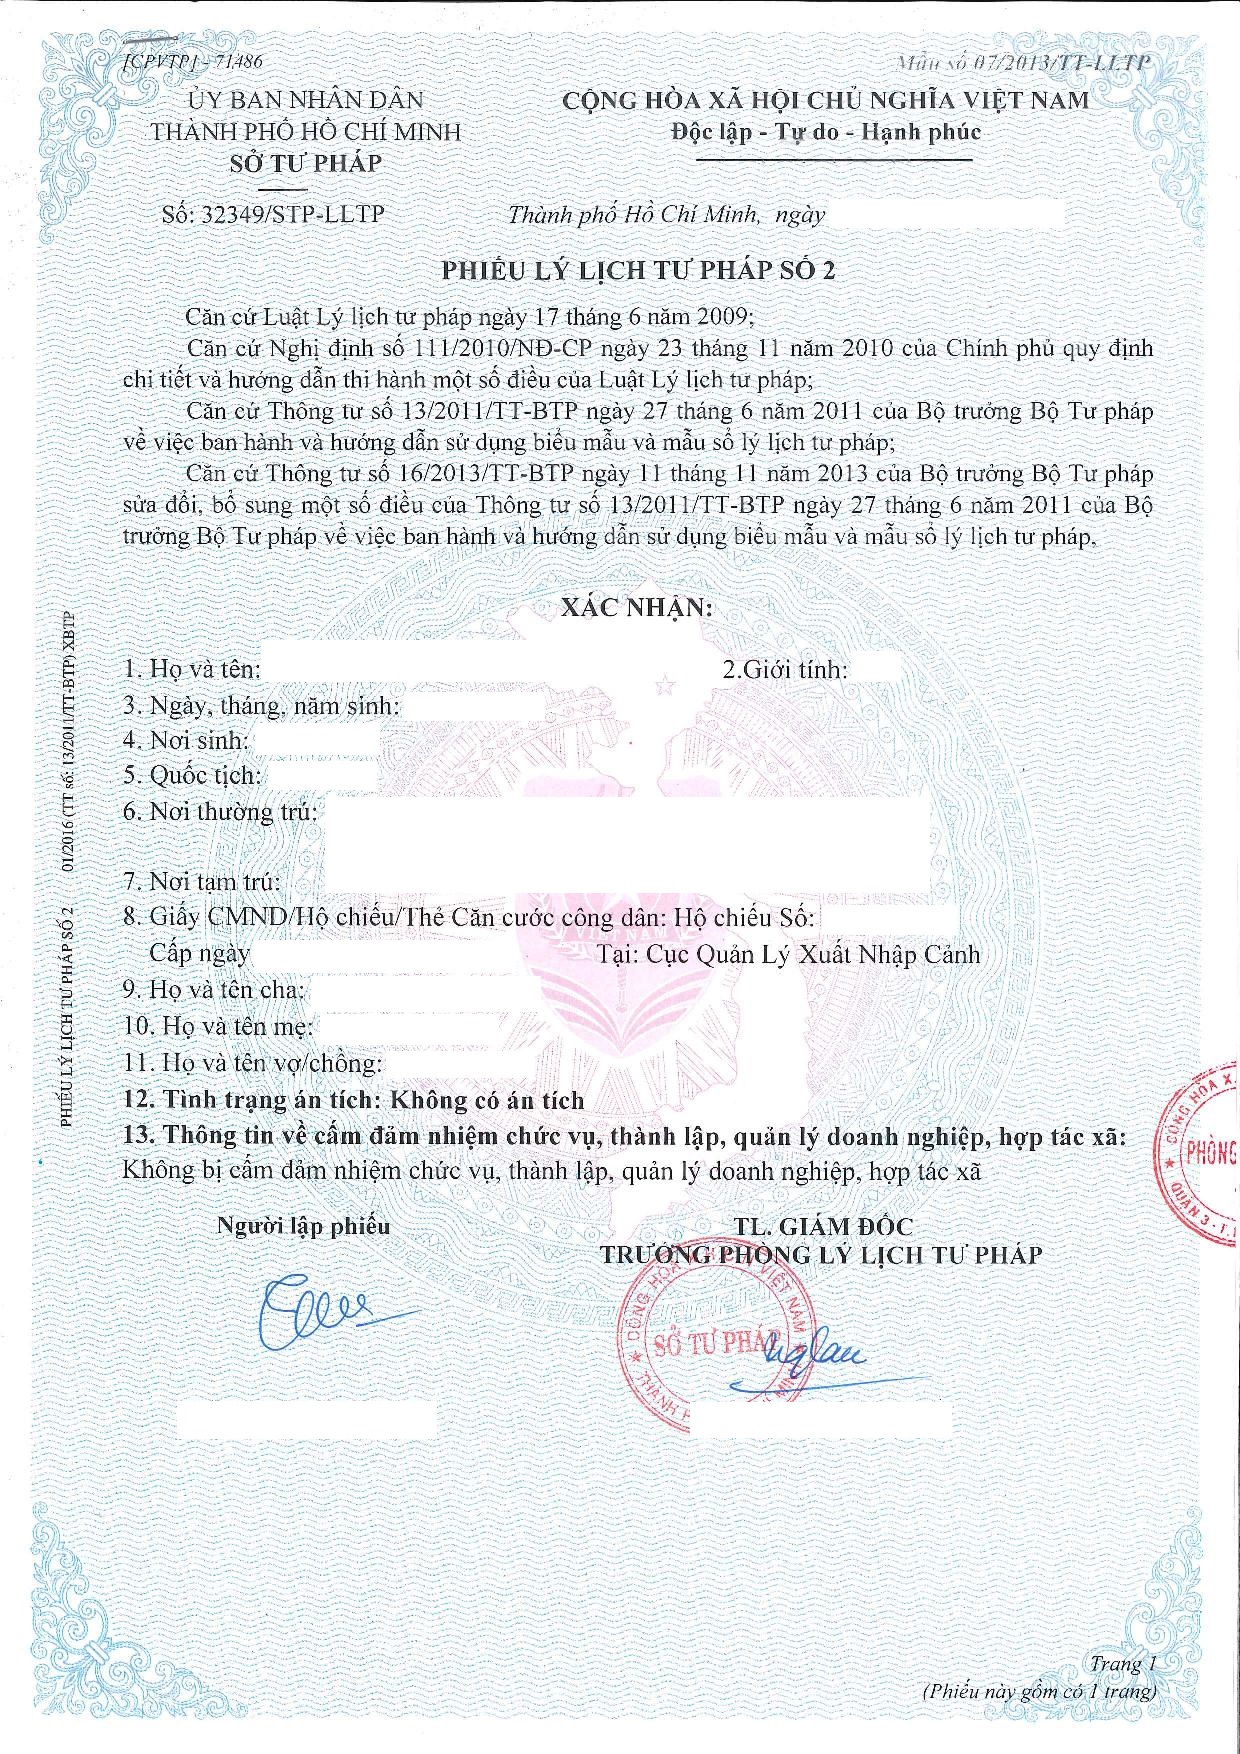 关于越南无犯罪记录证第二号的须知 | 申请无犯罪记录第二号的文件和程序